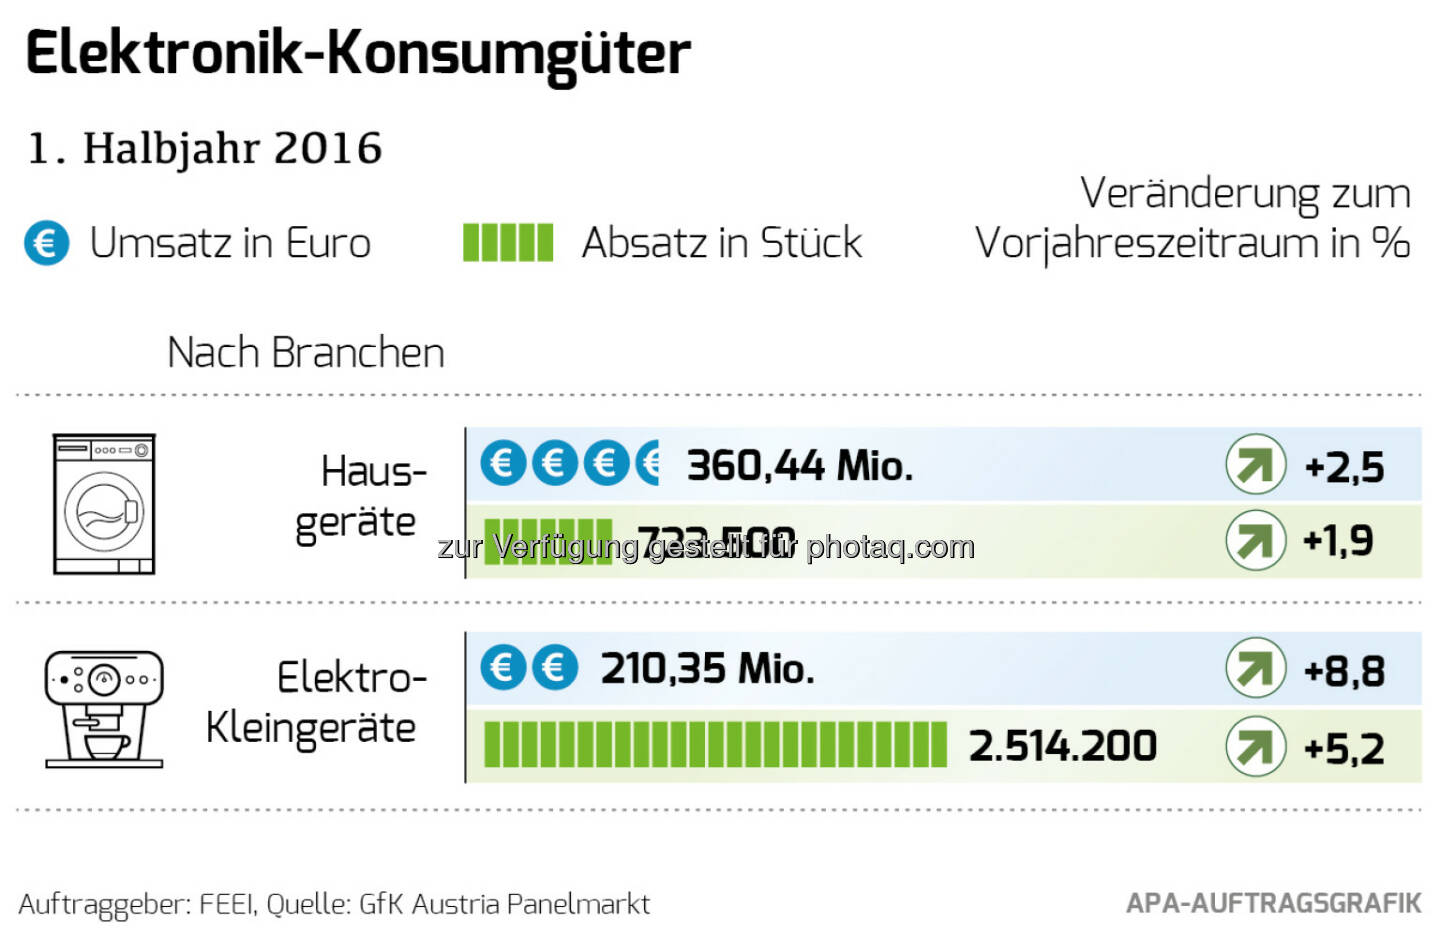 Grafik „Elektronik Konsumgüter 1. Halbjahr 2016“ : Markt für Elektronik-Konsumgüter wächst im 1. Halbjahr 2016 : Fotocredit: FEEI/APA Auftragsgrafik